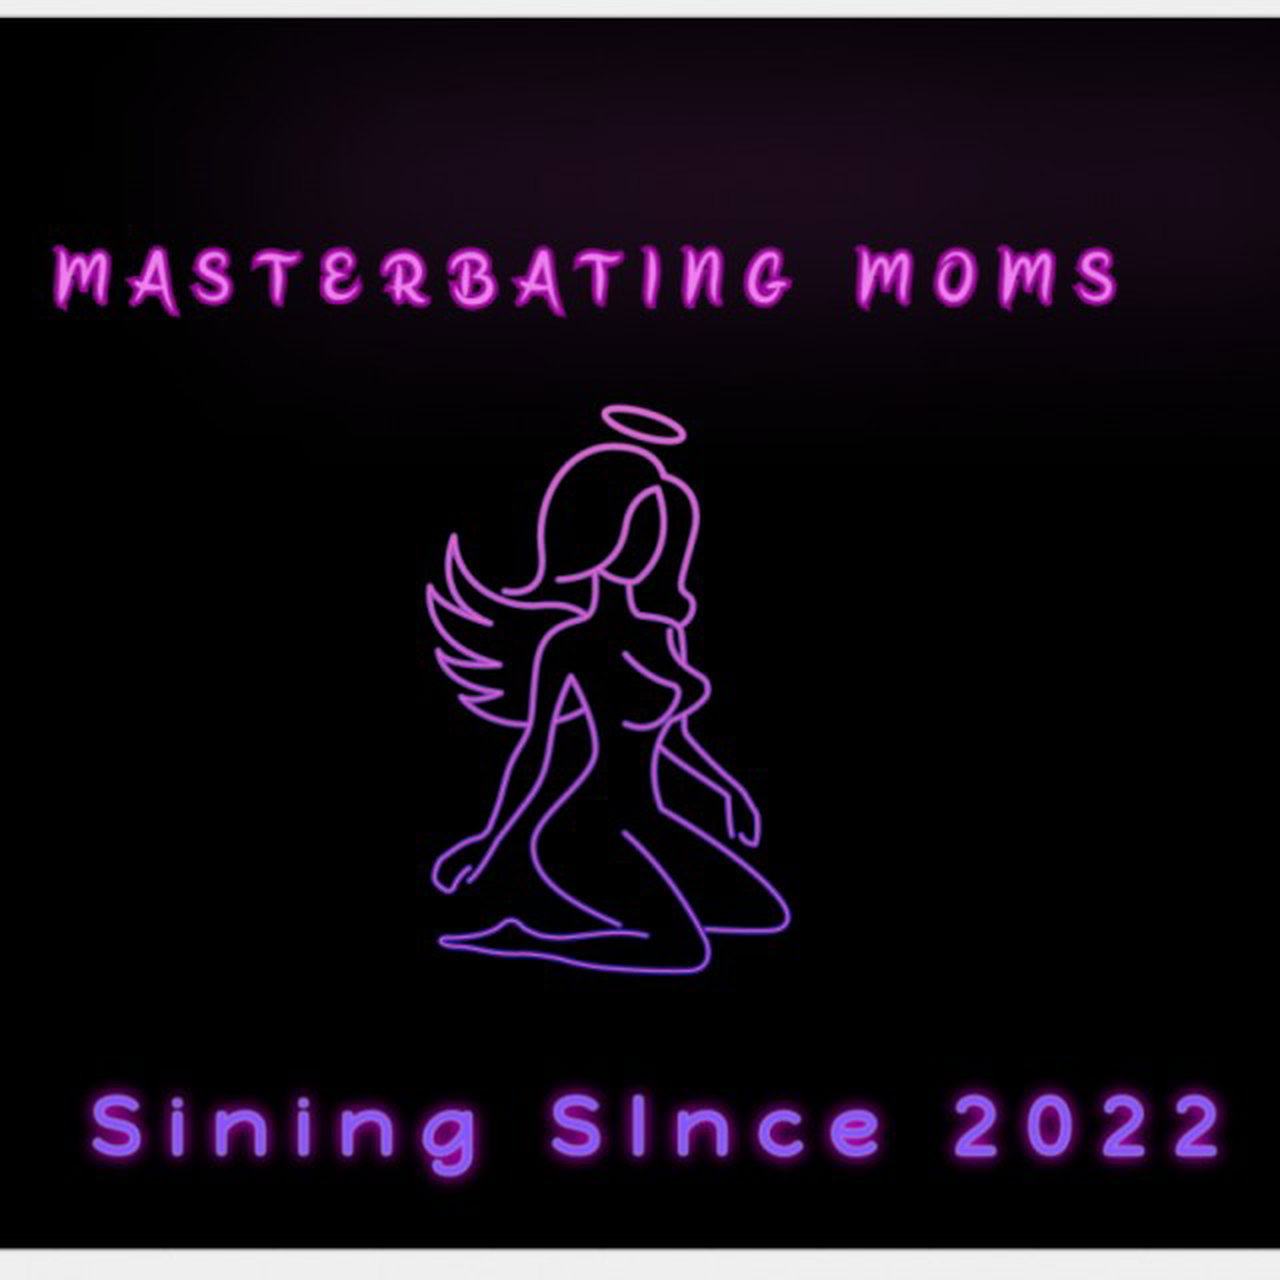 Masterbating mom's